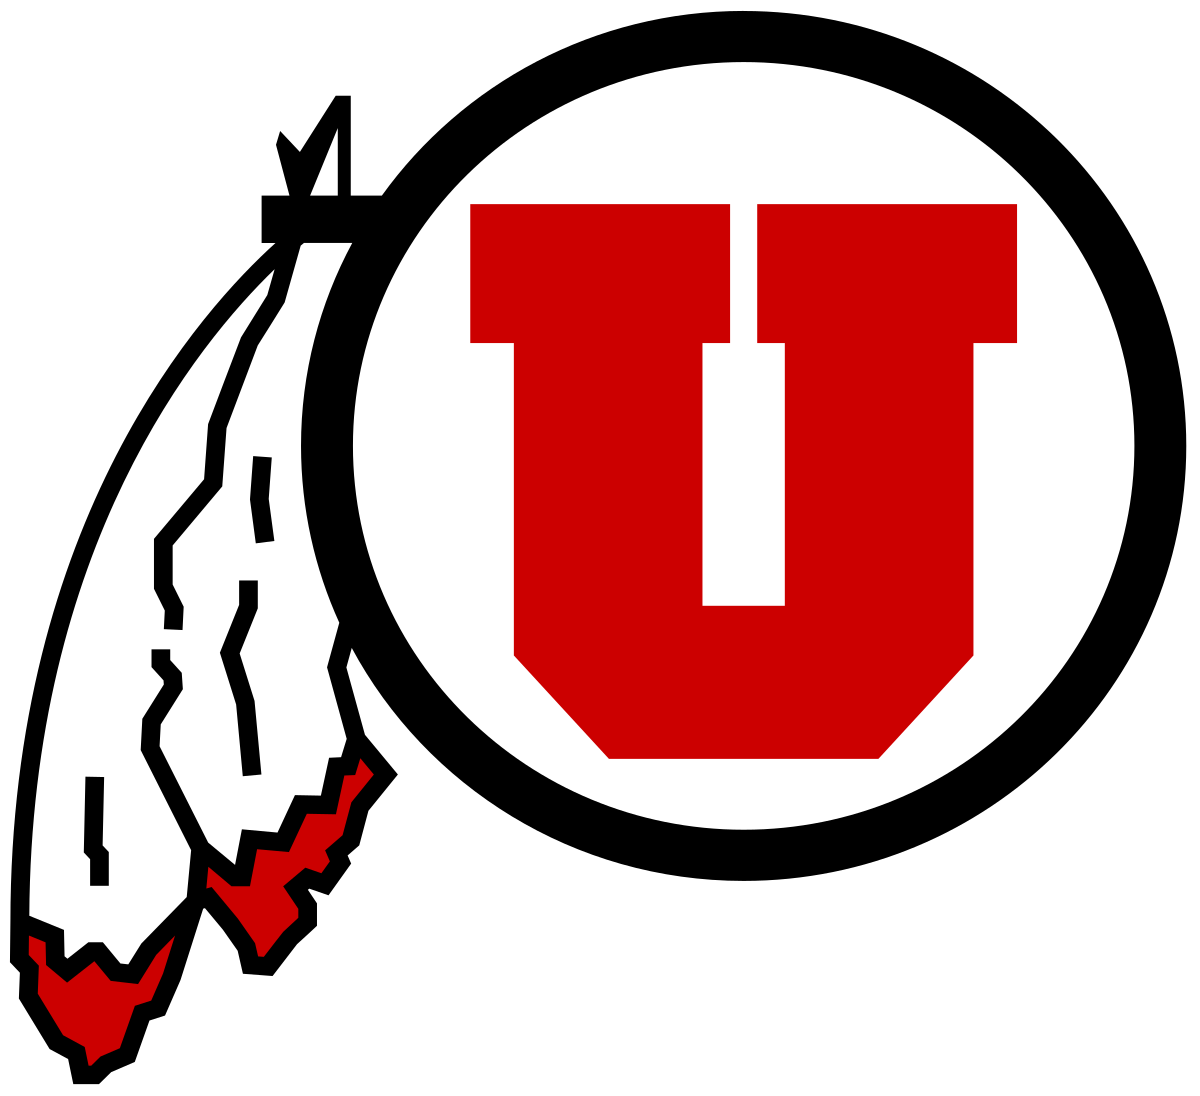 Utah Jazz flag color codes